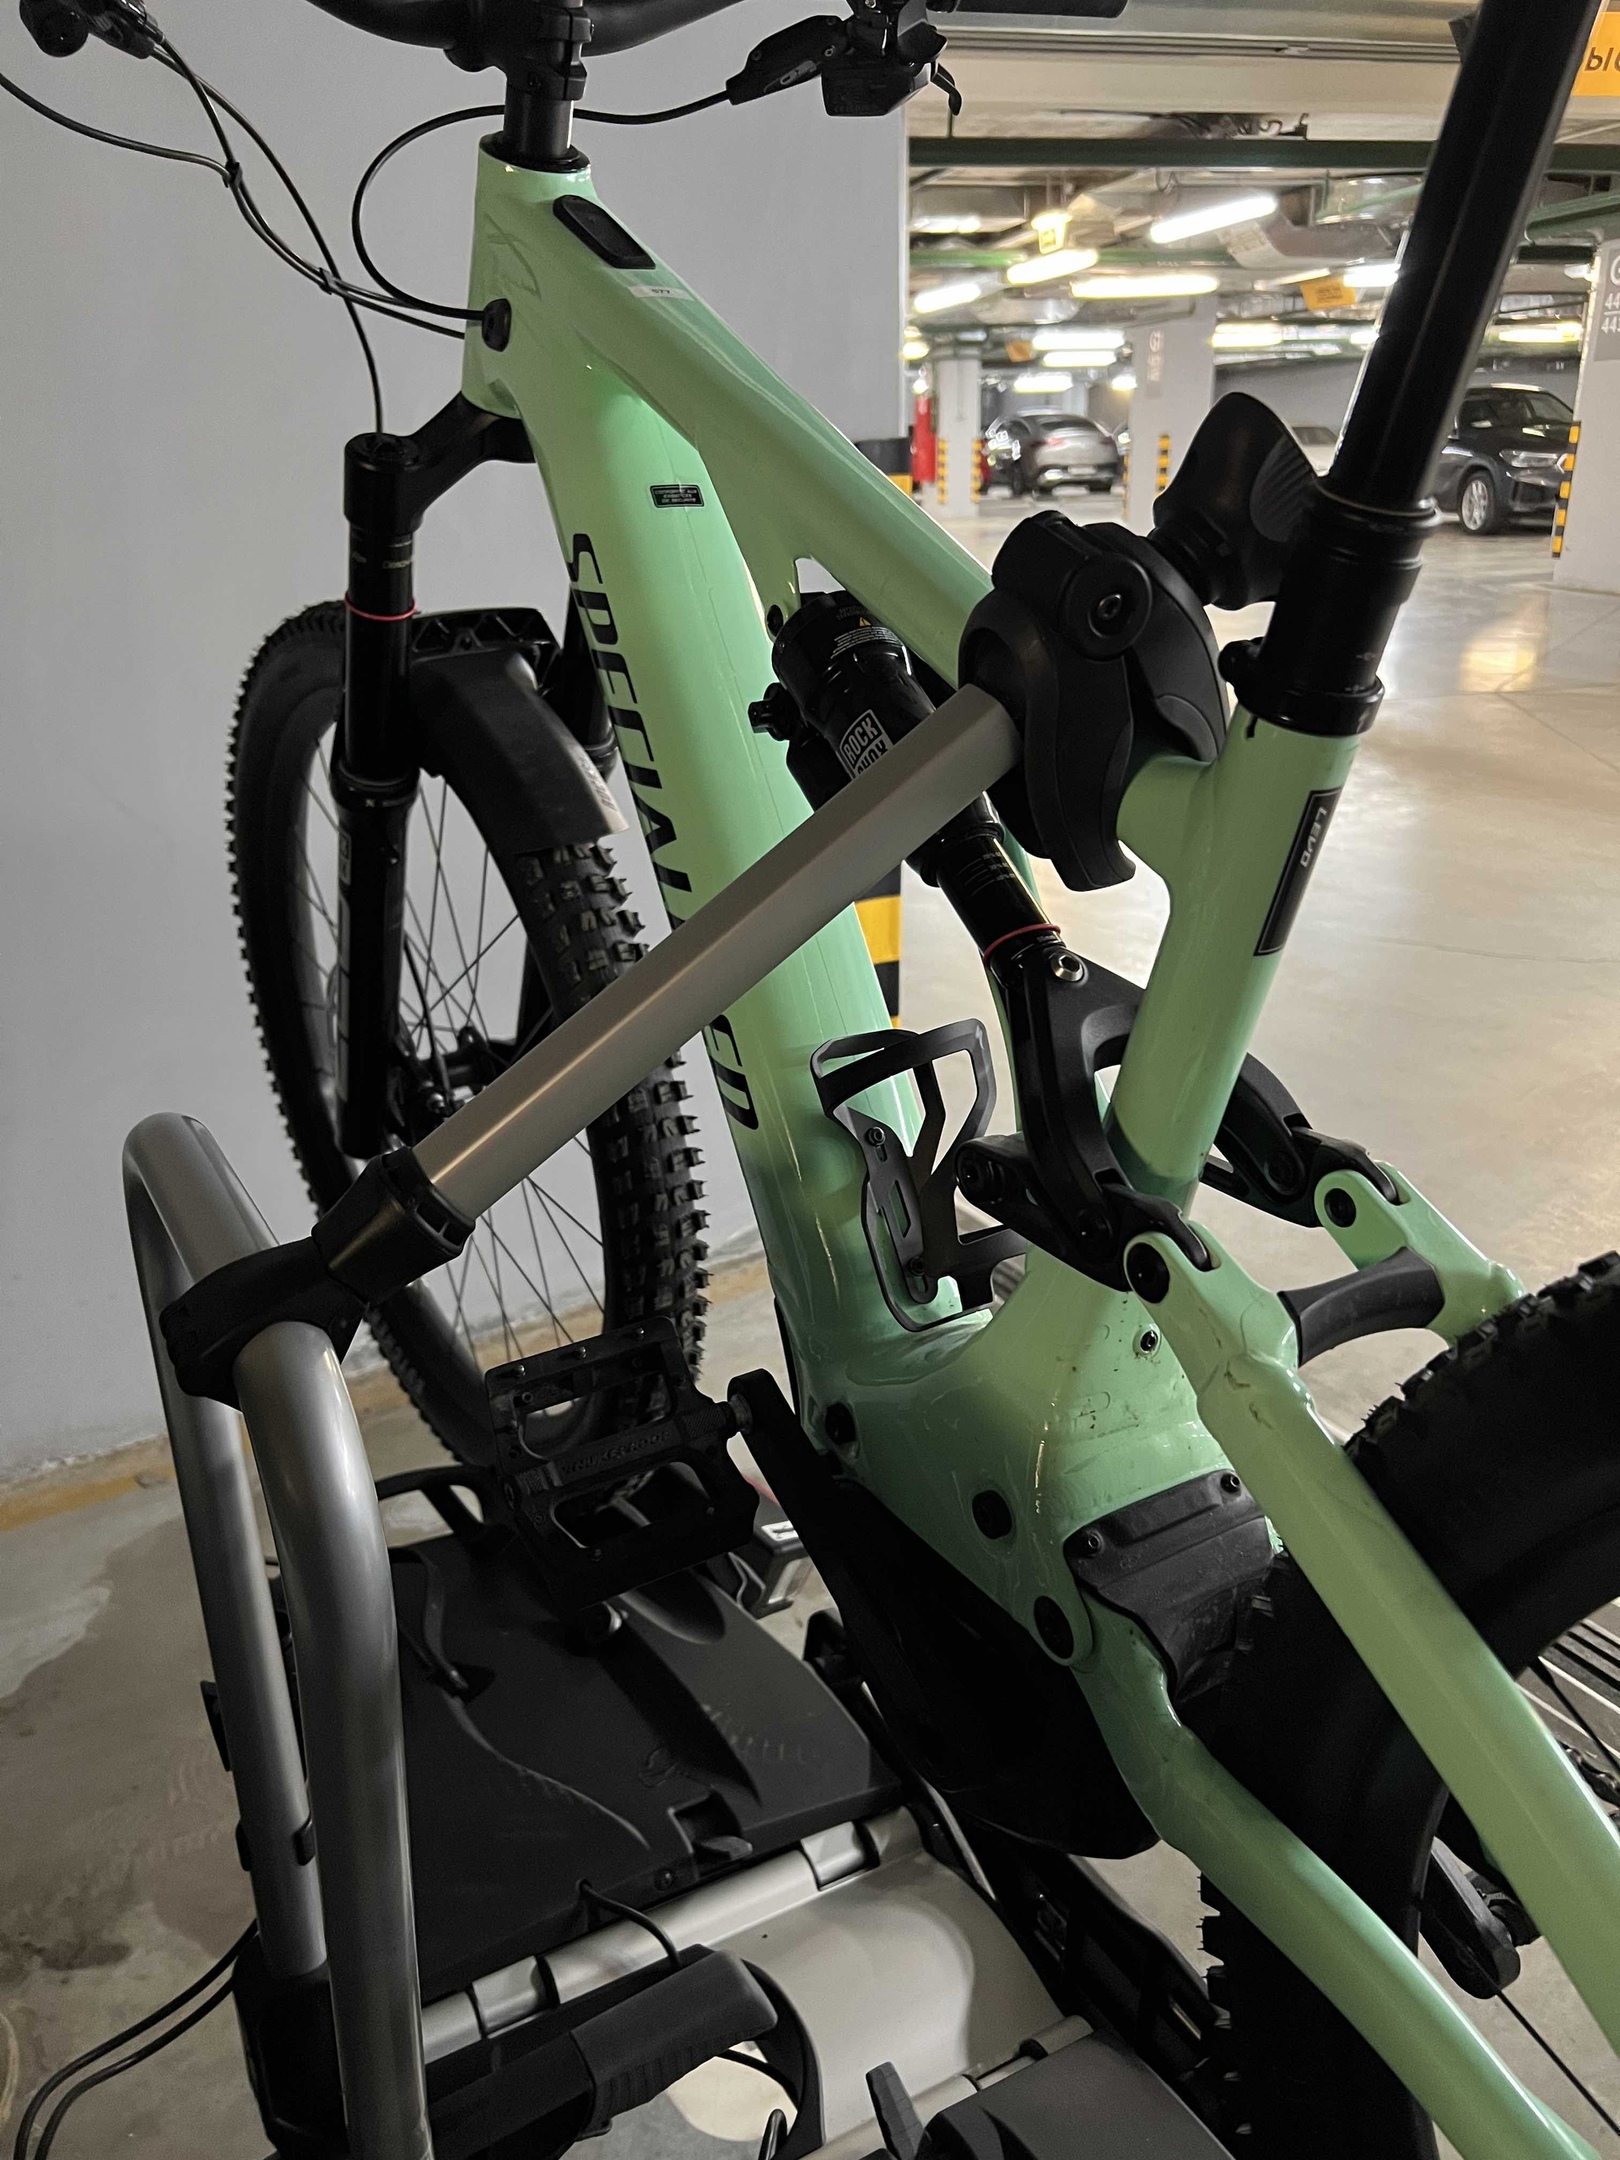 Thule EasyFold XT Bike Carrier